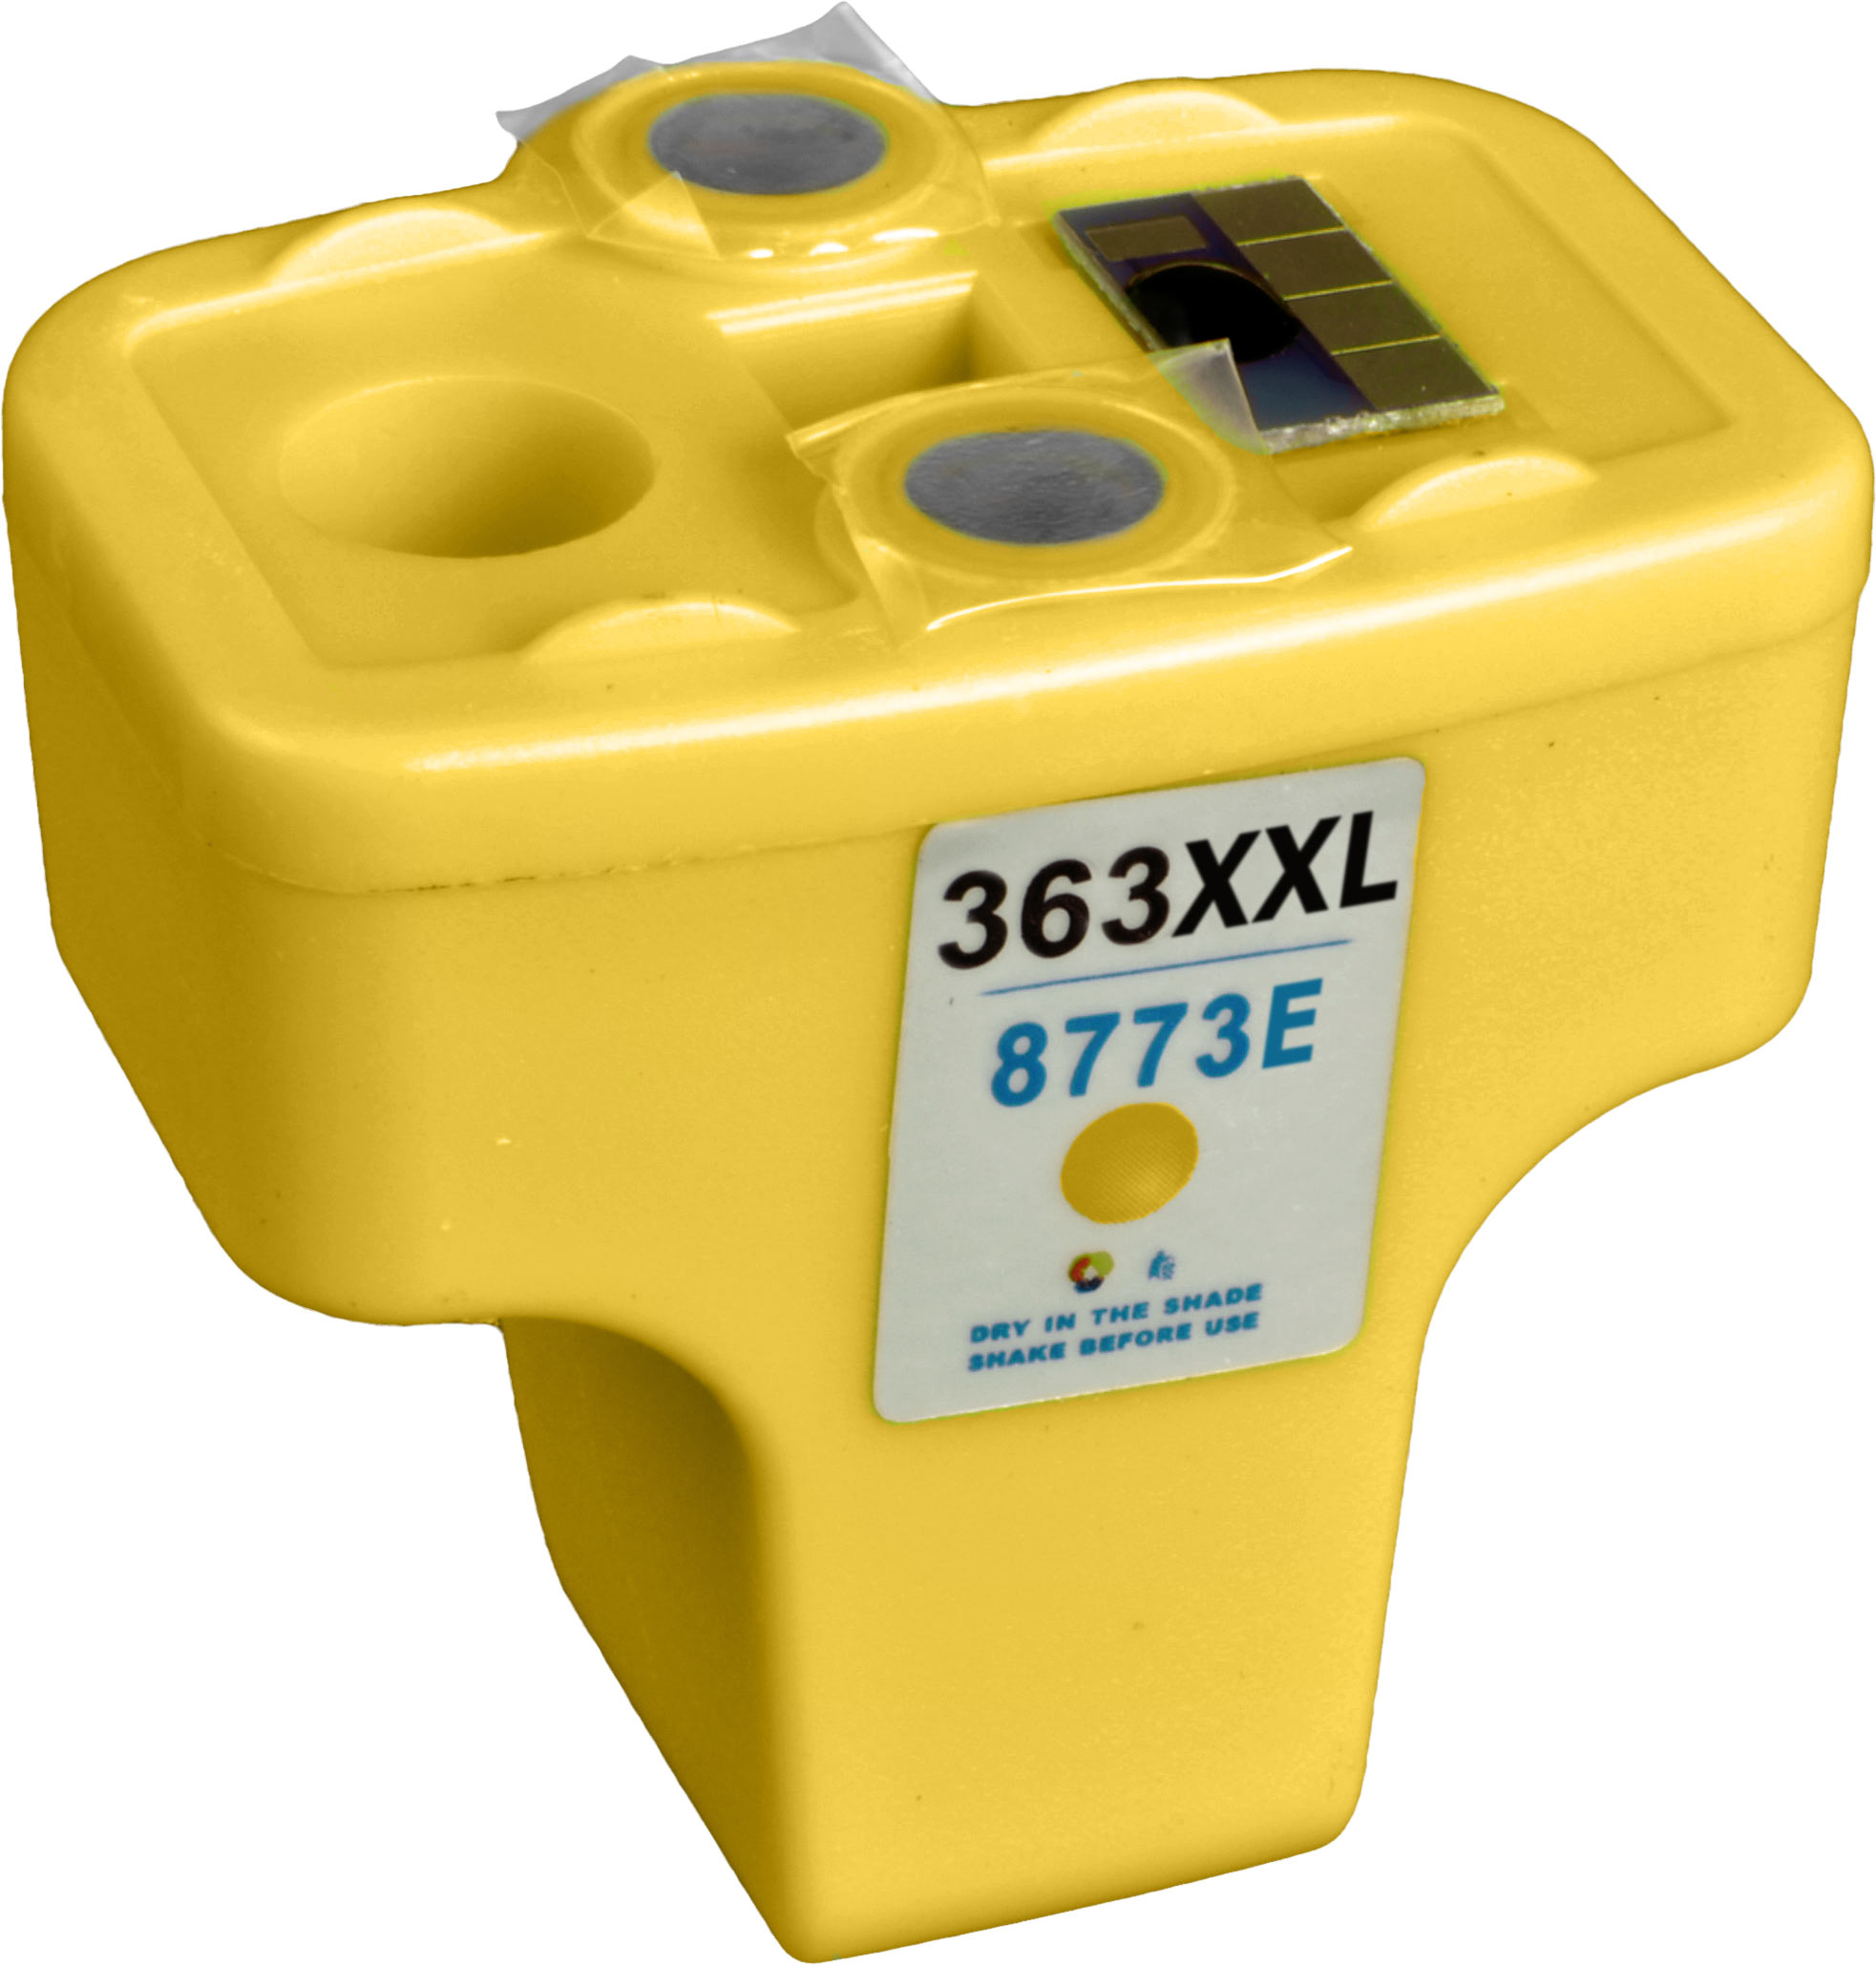 Ampertec Tinte für HP C8773E  363XXL  yellow